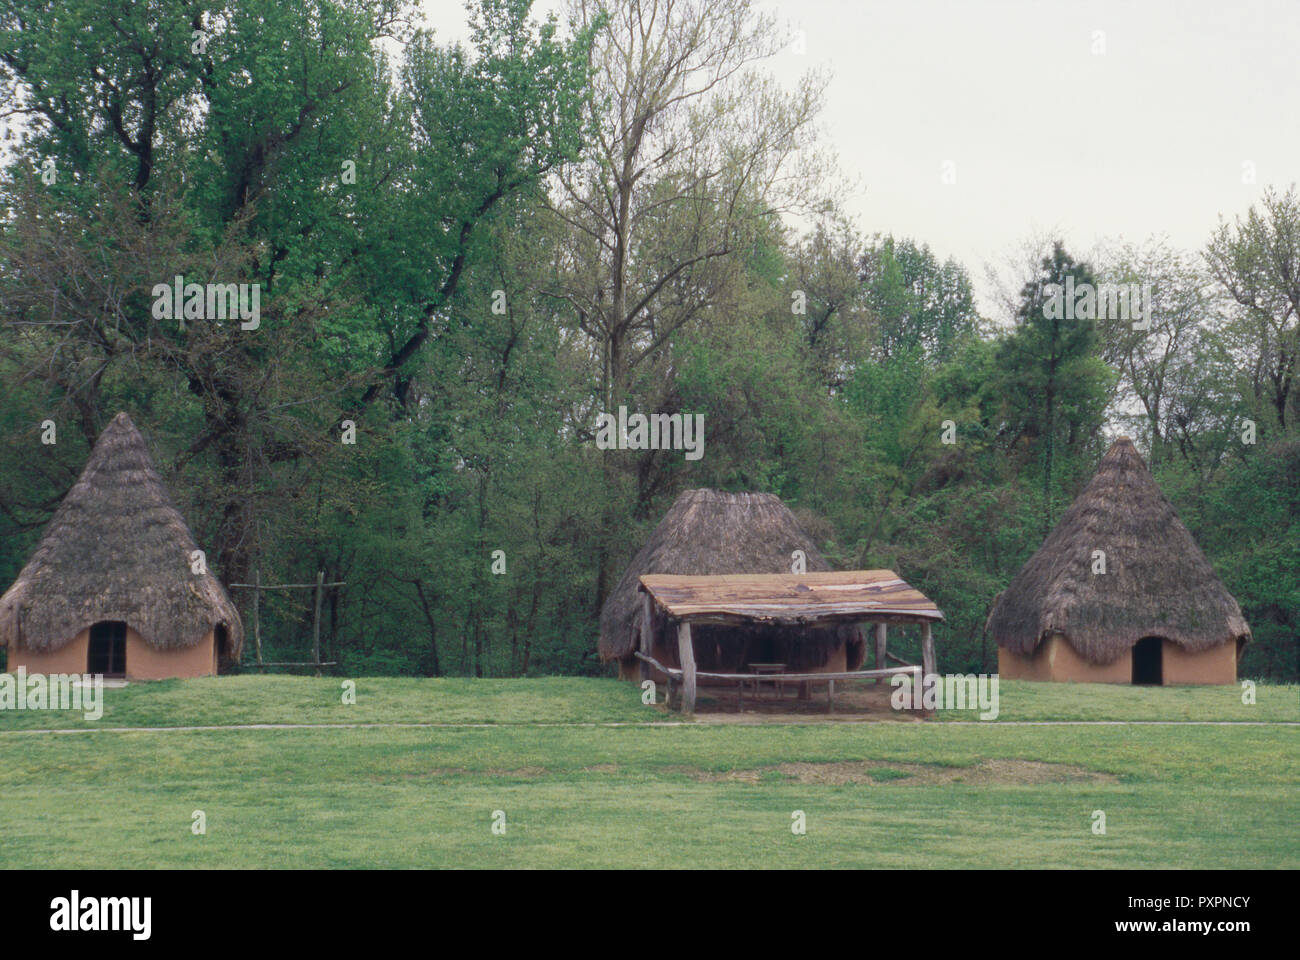 Ricostruito Chucalissa villaggio di nativi americani sul fiume Mississippi, Tennessee. Fotografia Foto Stock